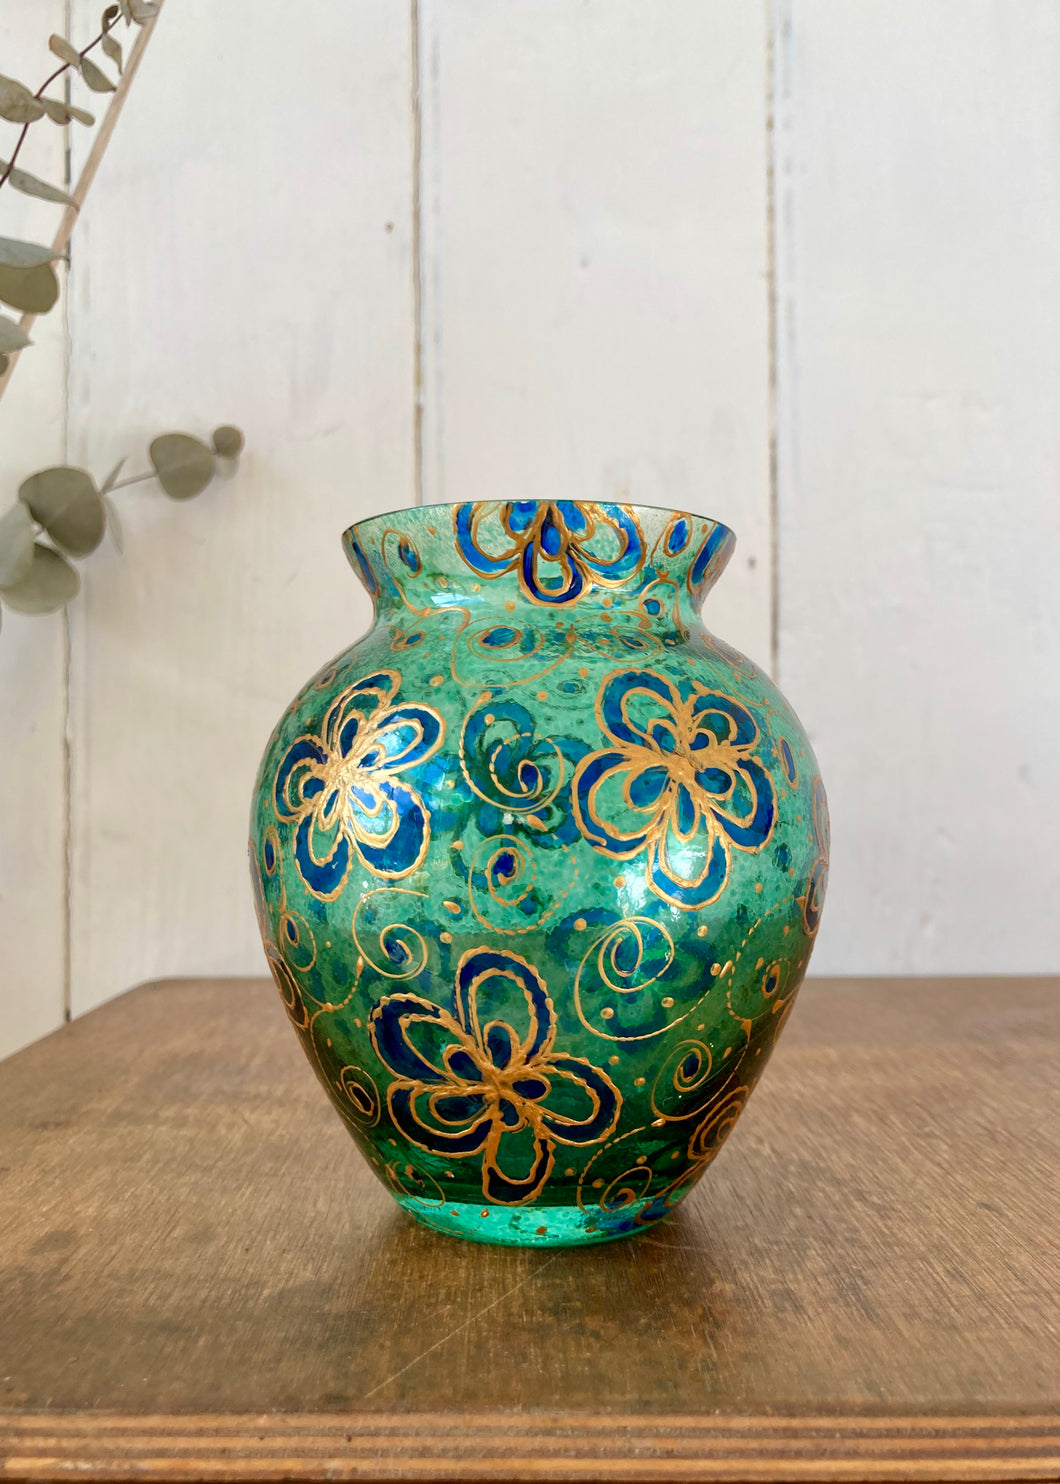 Hand blown green glass vase